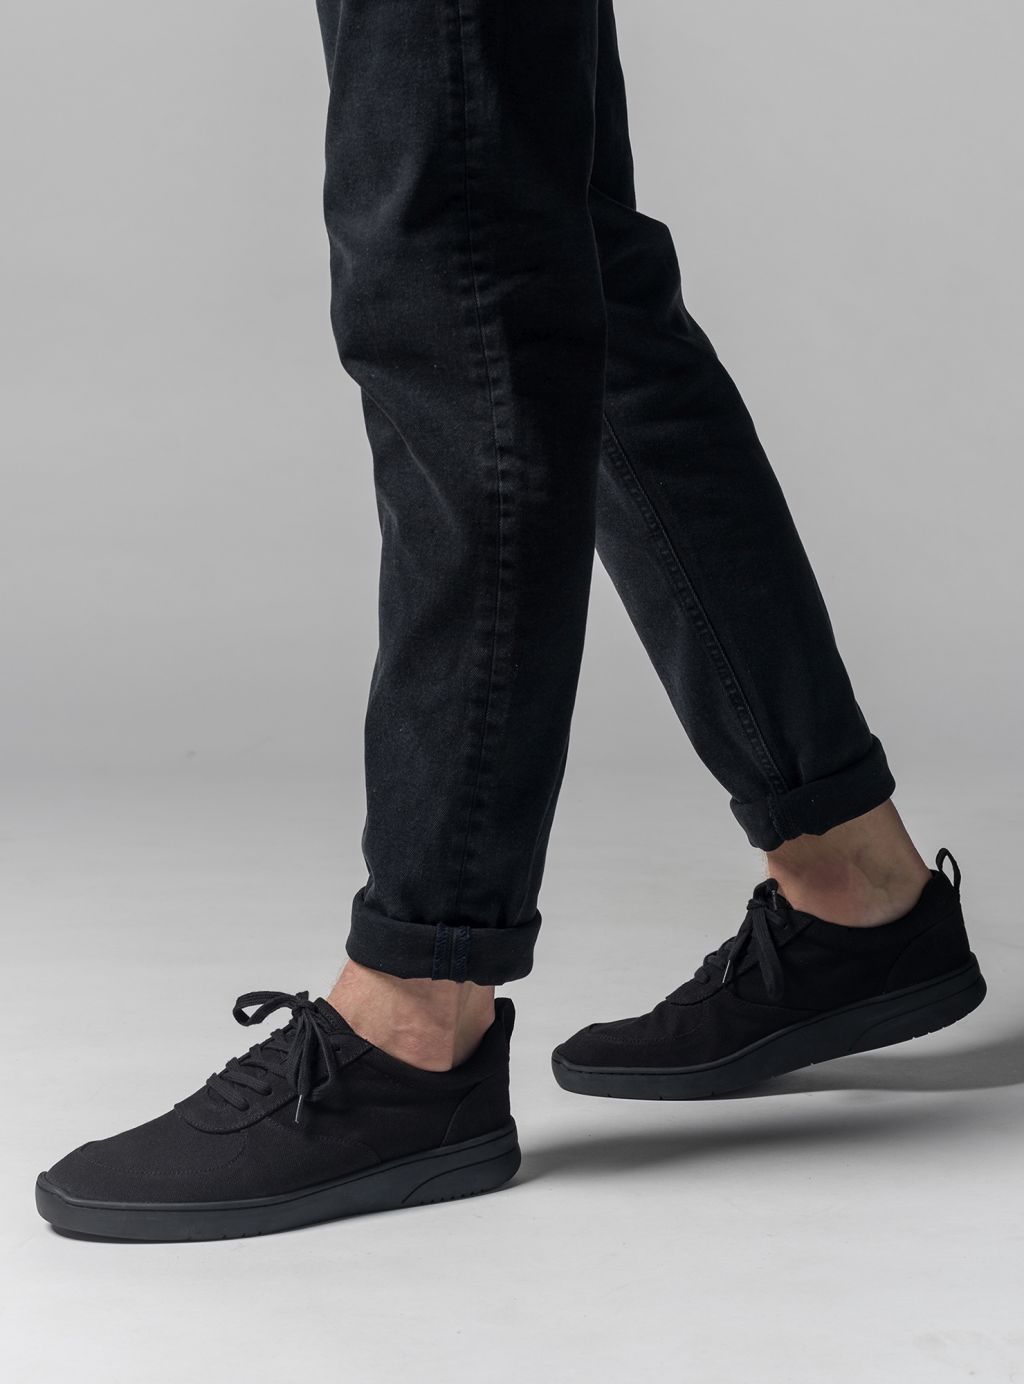 Mela Sneaker Herren black/black 45